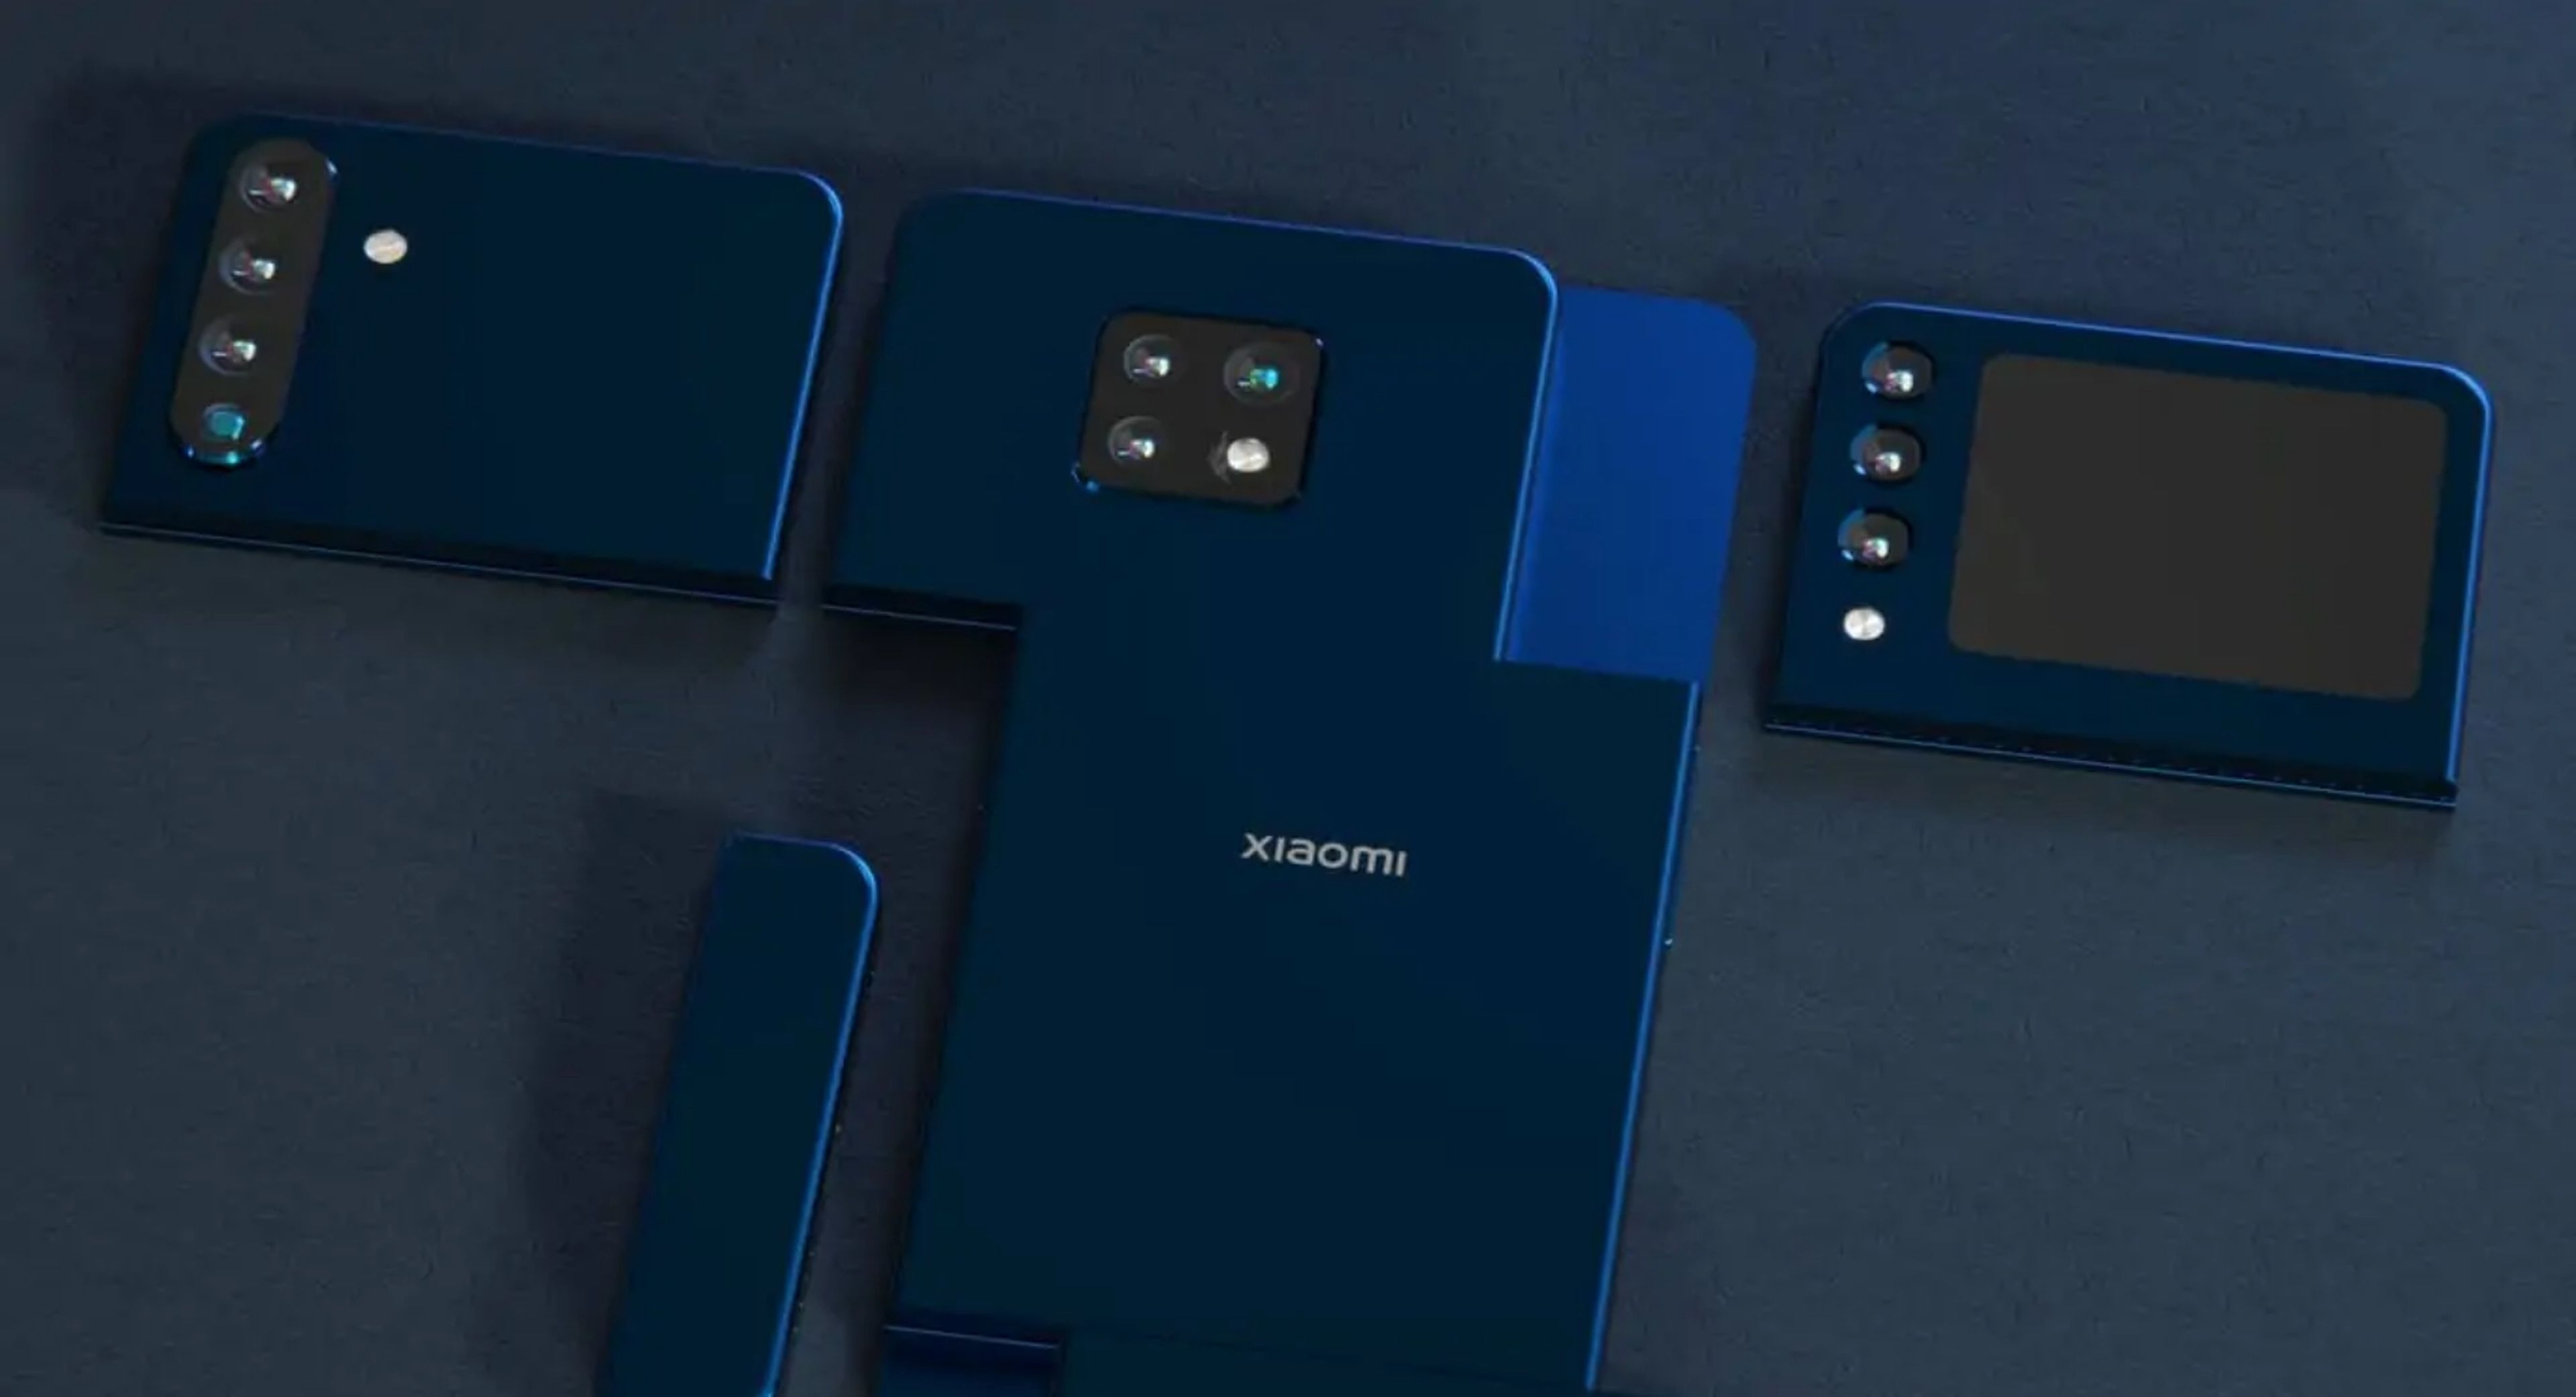 Los teléfonos modulares podrían ser una realidad gracias a la patente de Xiaomi